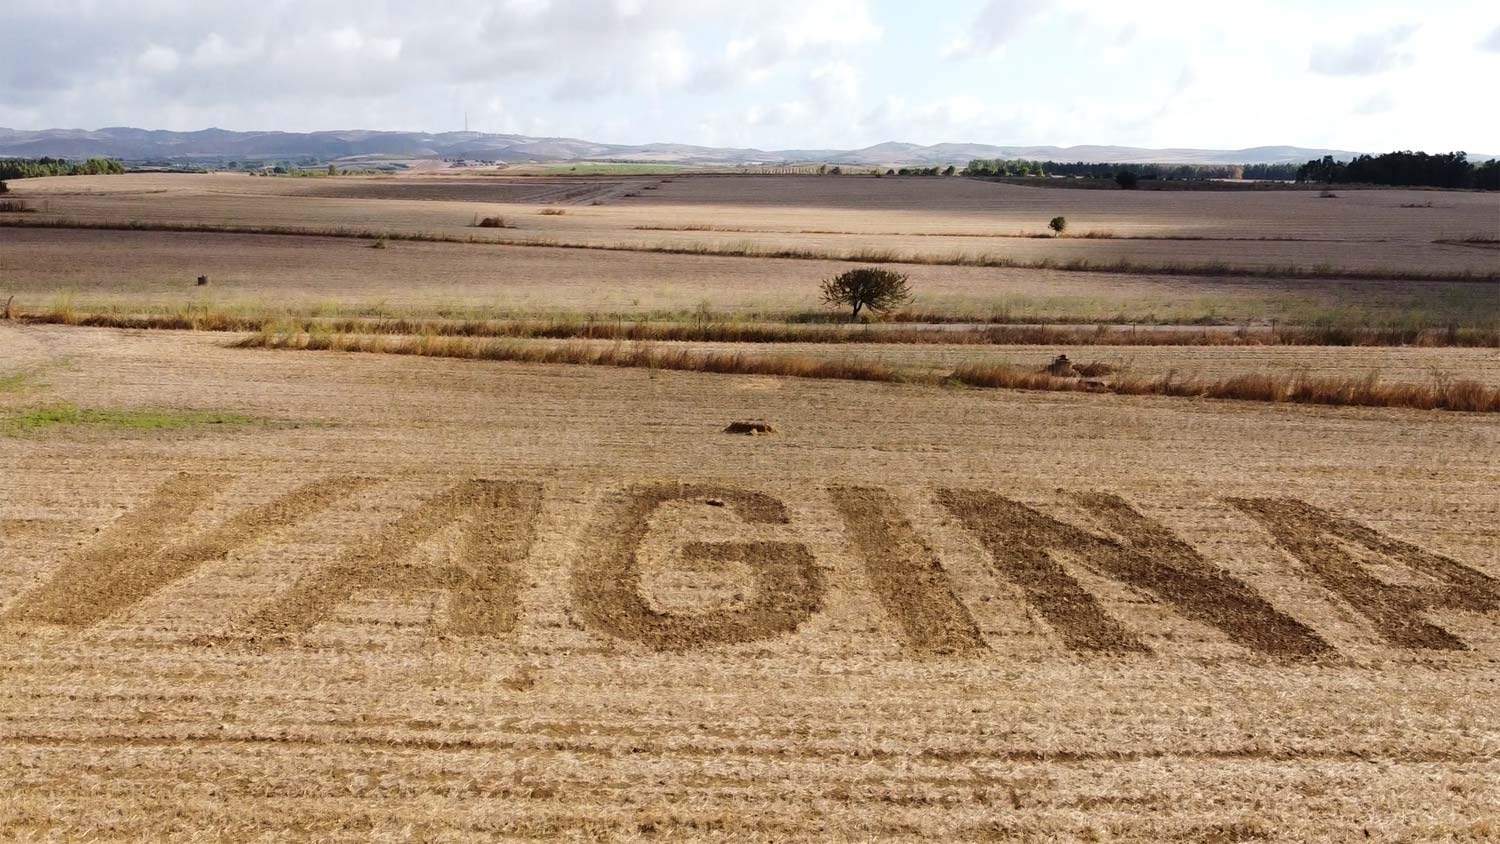 Sardaigne, un artiste crée une énorme inscription VAGINA dans un champ